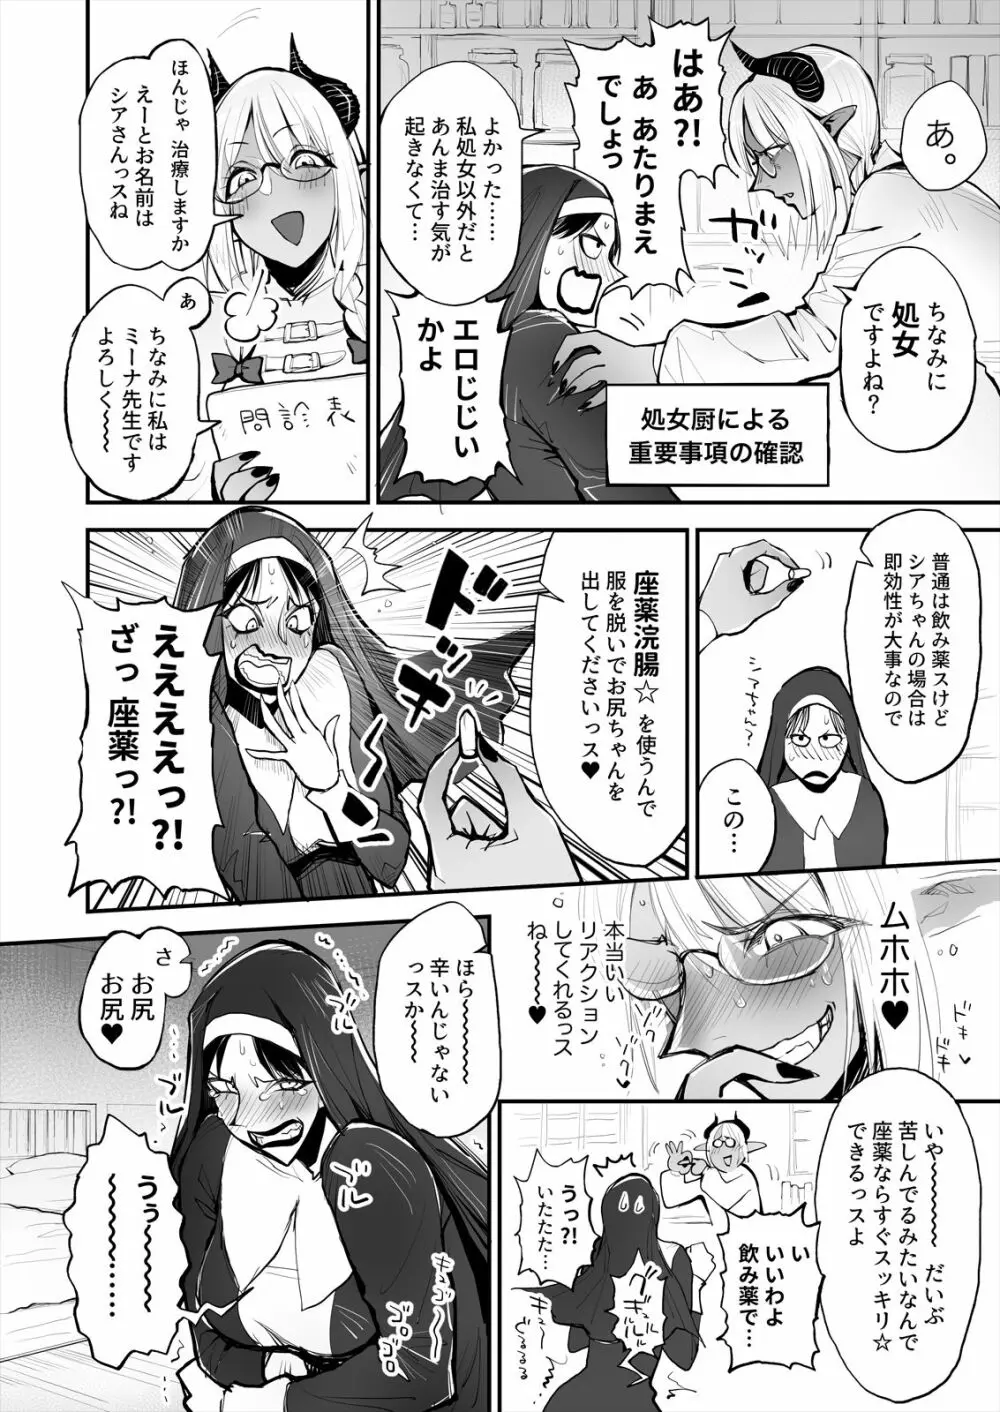 便秘のシスターとふたなりのお医者さん - 同人誌 - エロ漫画 - NyaHentai